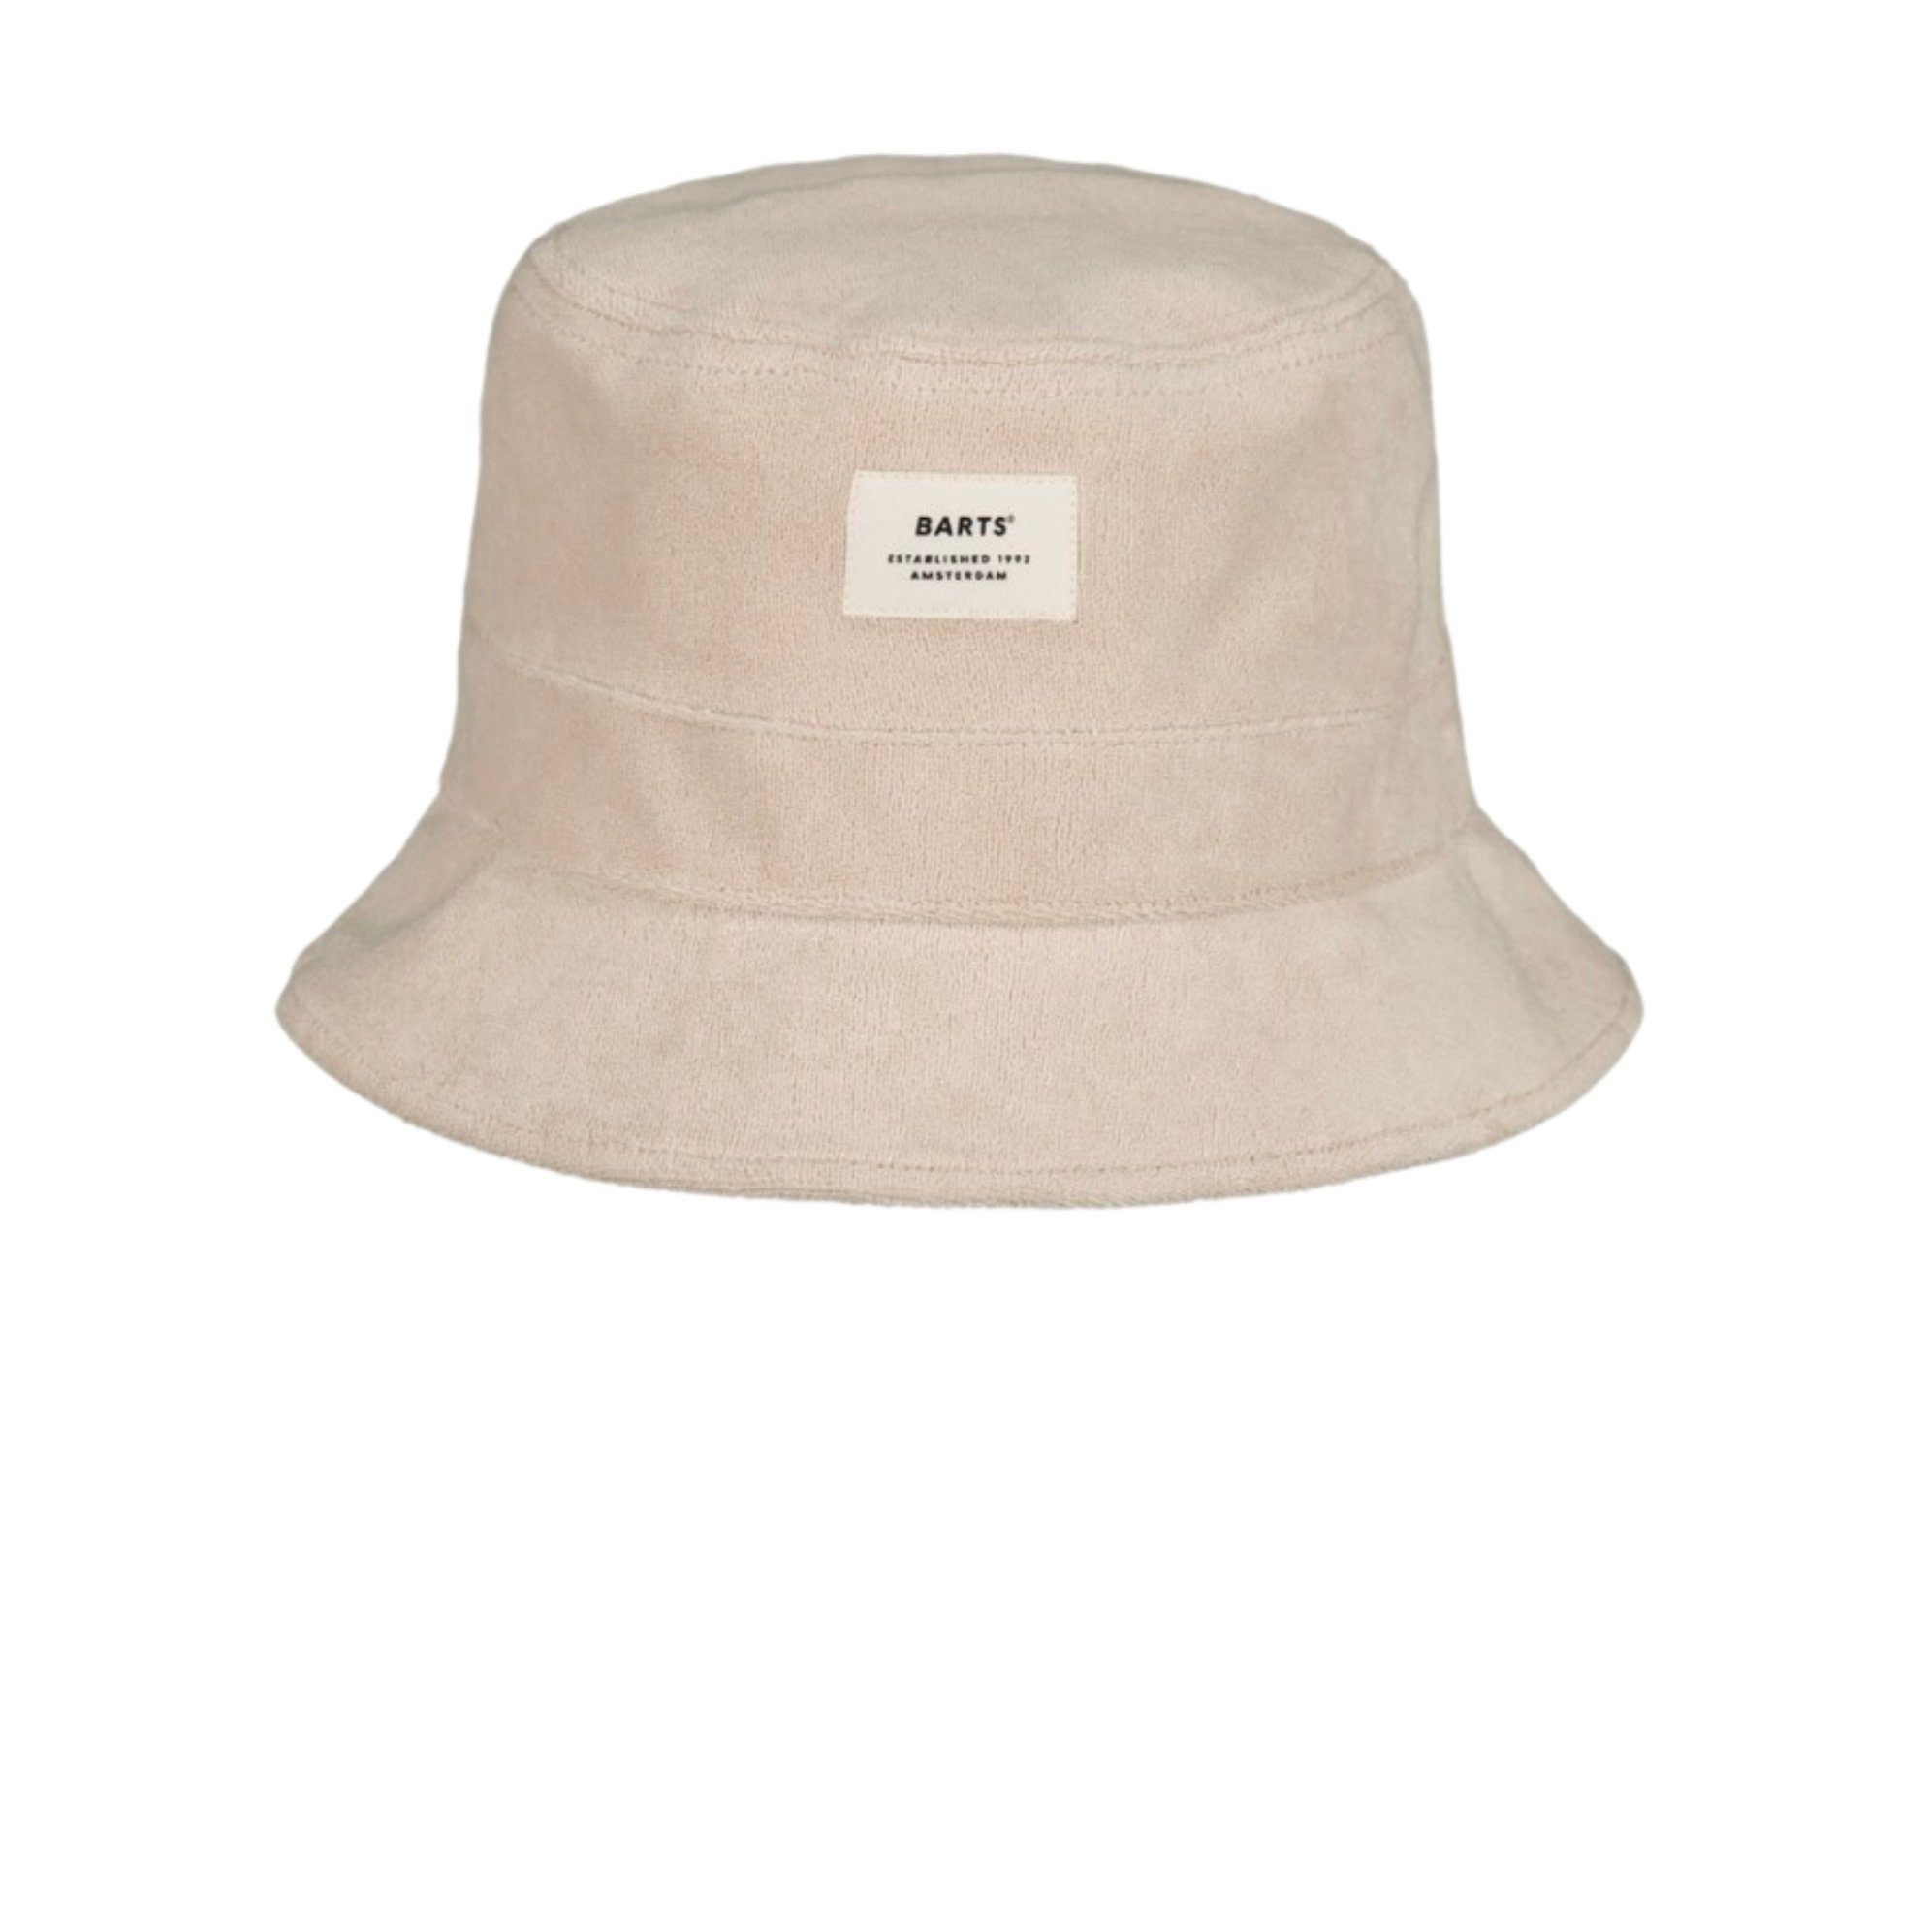 Barts Fischerhut Fischerhut Bucket Hat Gladiola in der Farbe cream oder taupe Bucket Hat